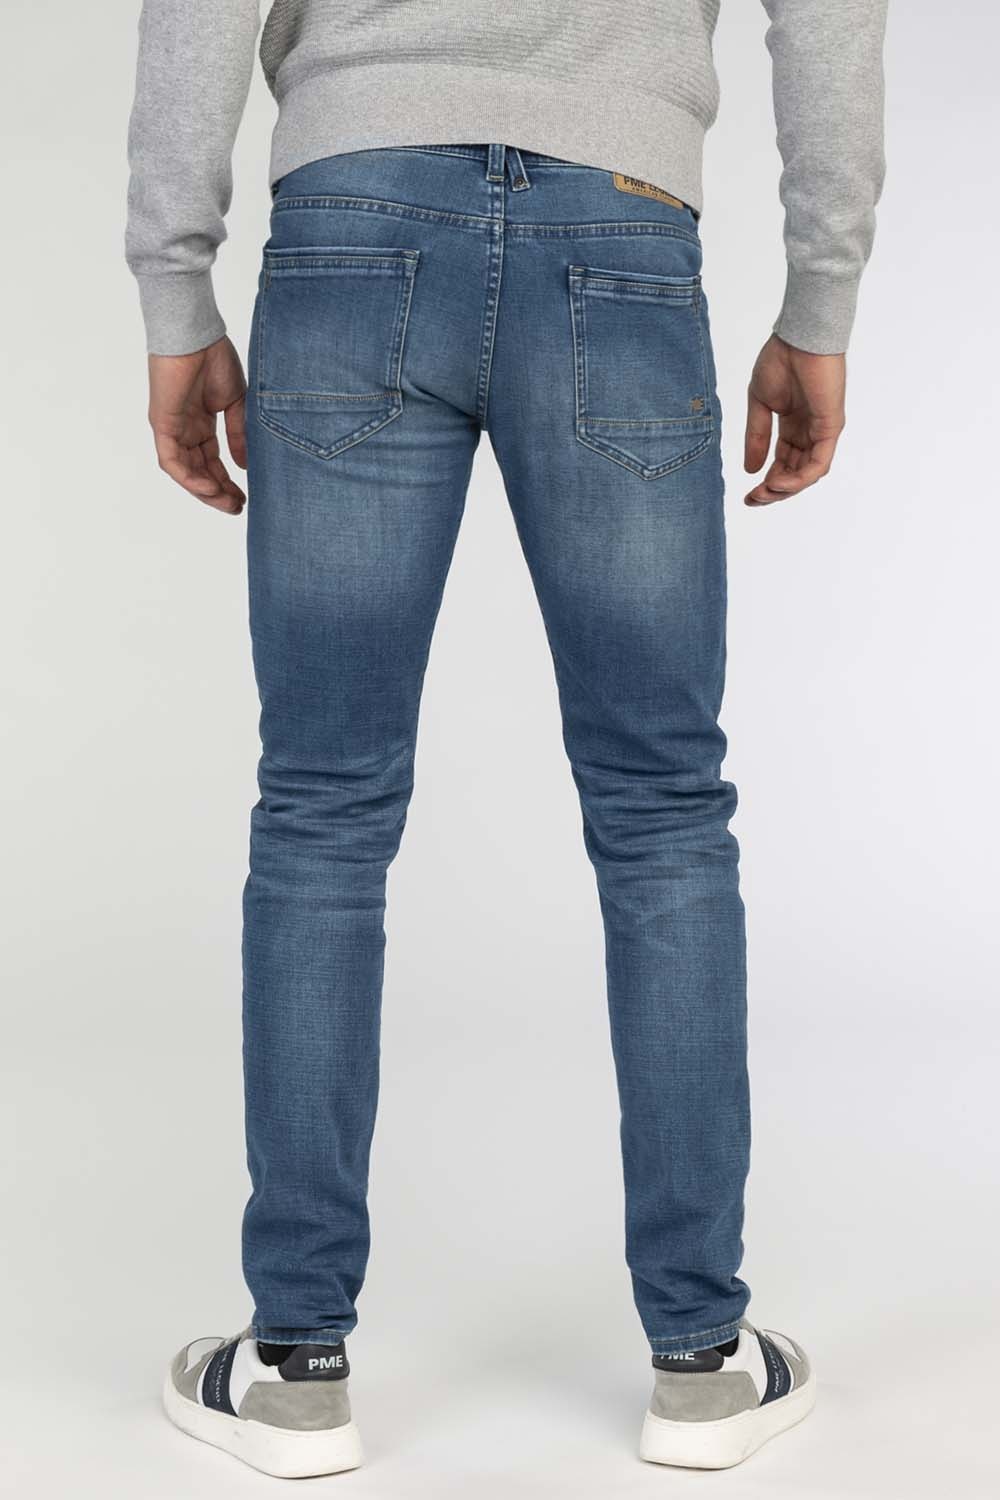 PME Legend Jeans Tailwheel smb PTR140 - Heren Jeans Webshop. Jeans &  Fashion Online - Leads Men & Women